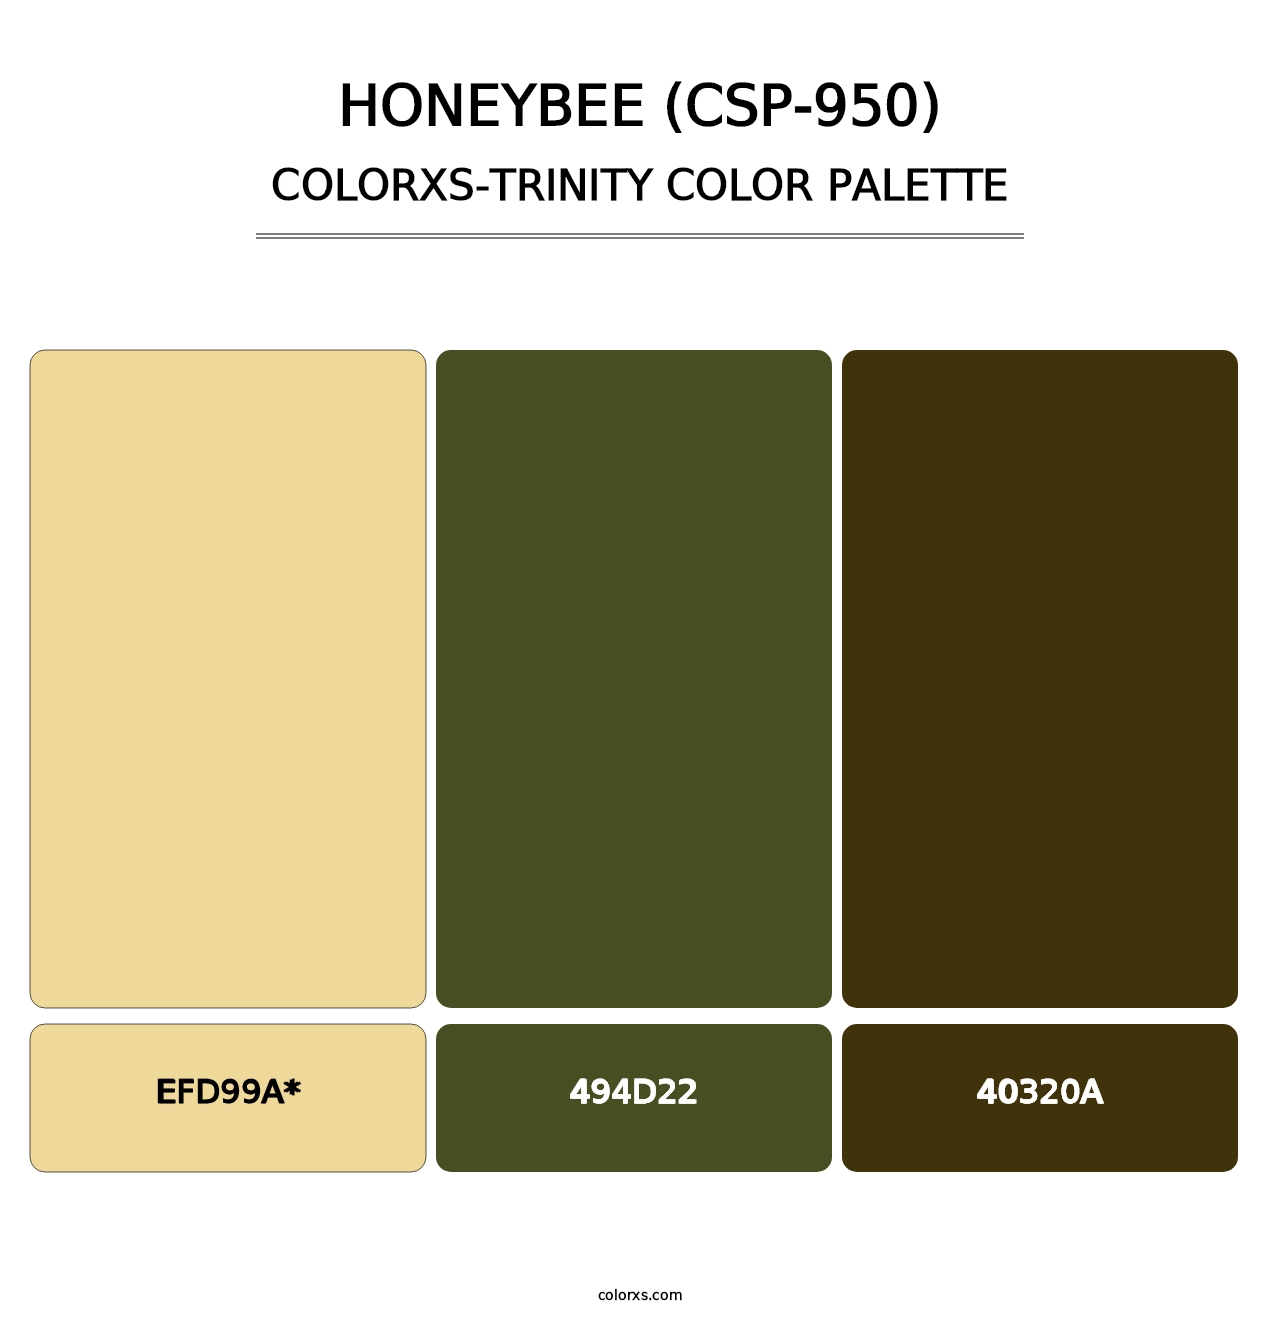 Honeybee (CSP-950) - Colorxs Trinity Palette